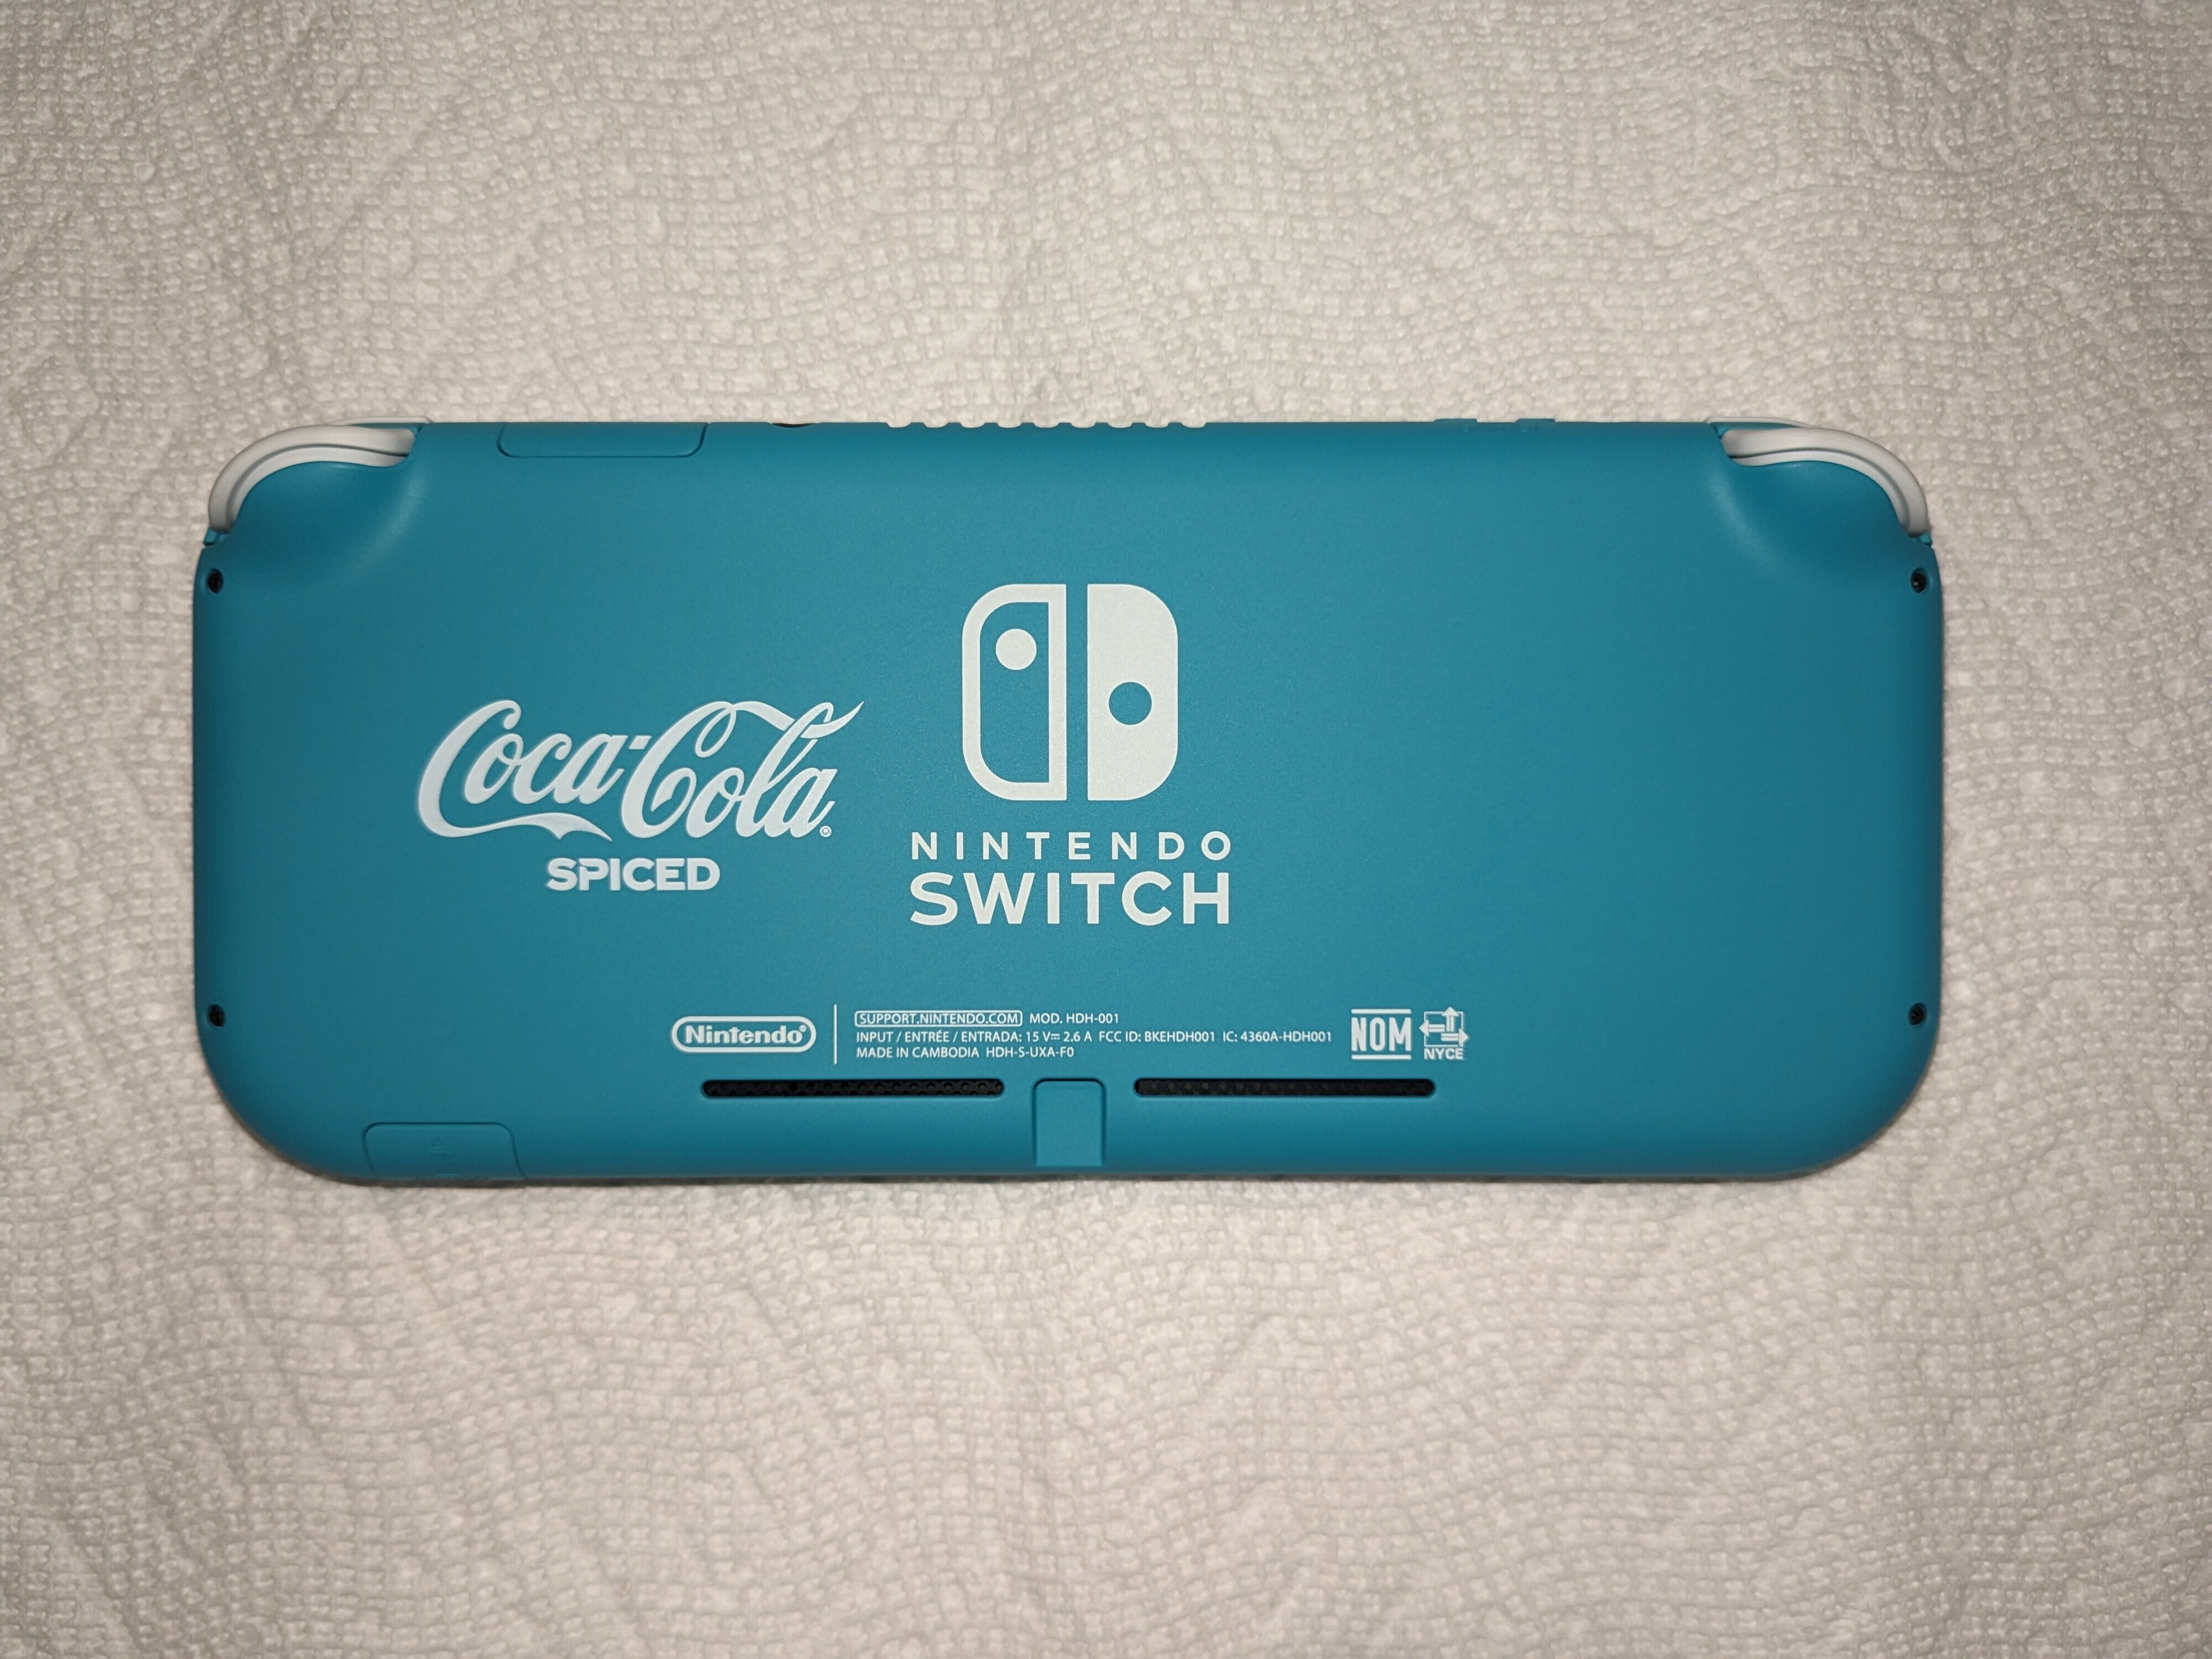  Nintendo Switch Lite Coca-Cola Spiced Console